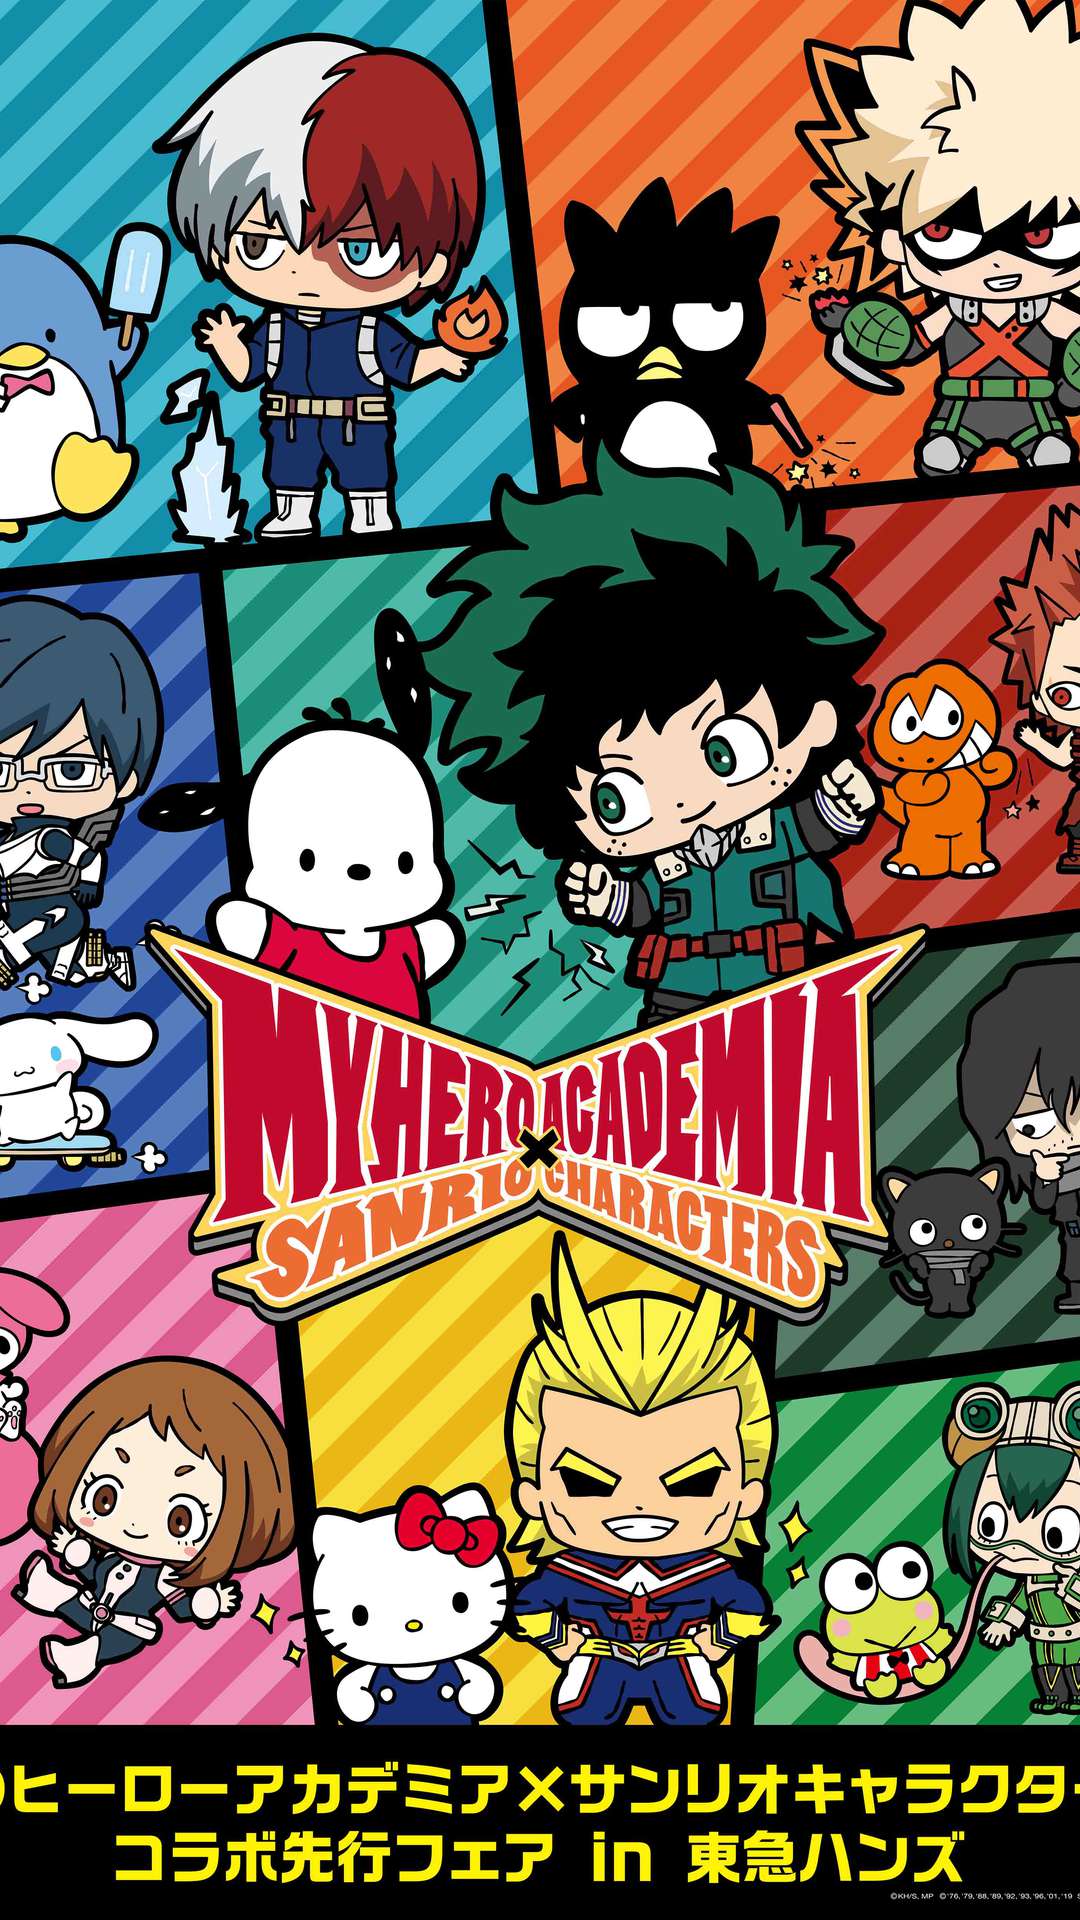 MHA Shoto Todoroki Anime Wallpapers  MHA Wallpapers for iPhone